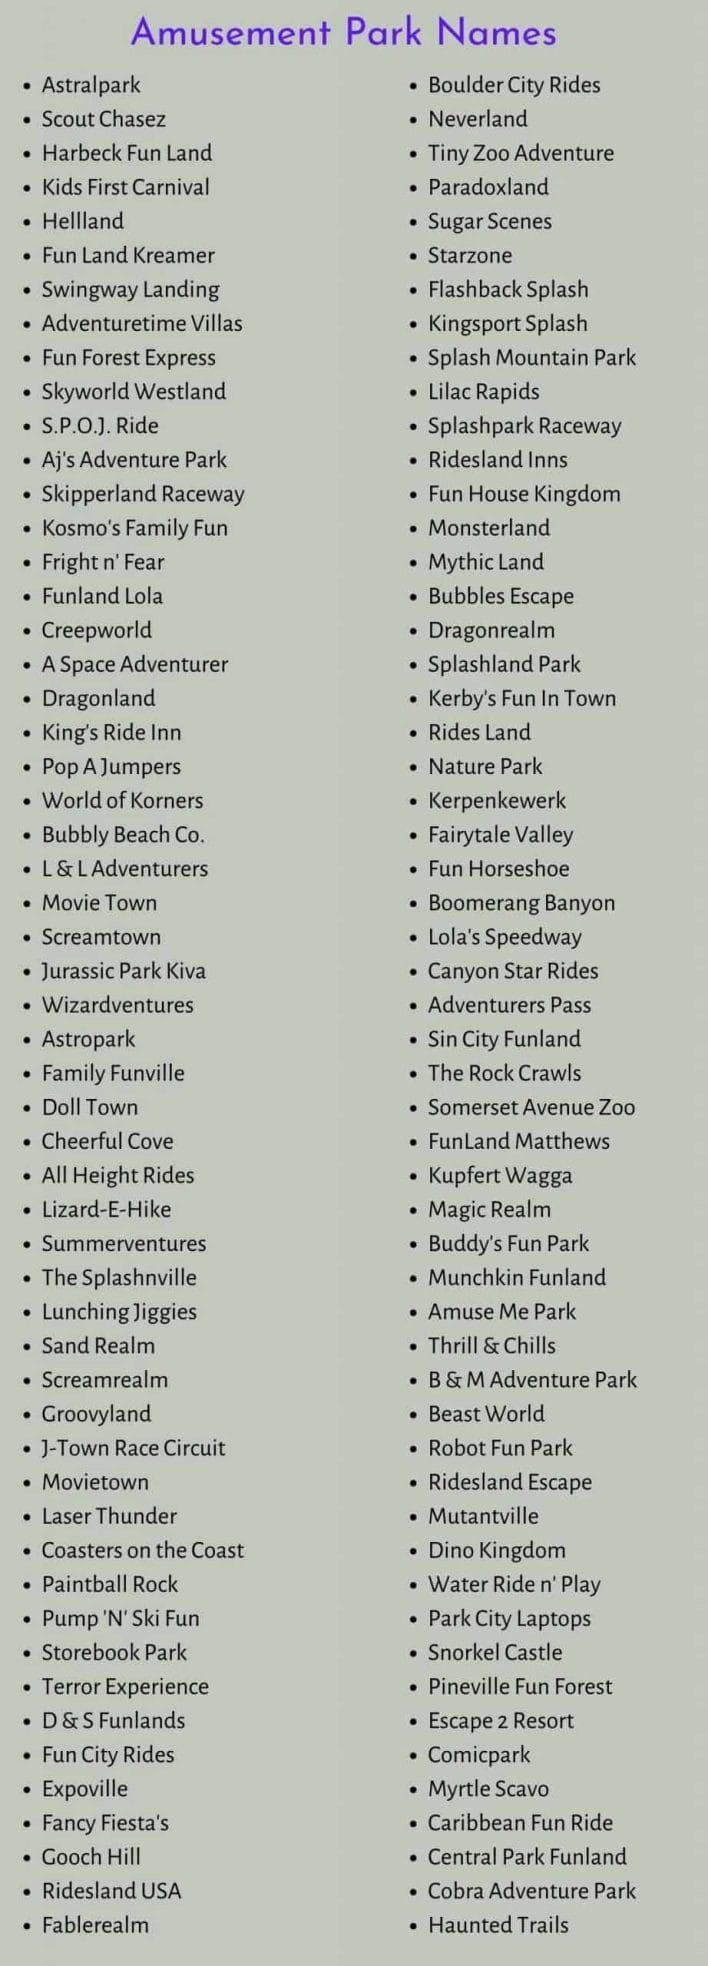 Amusement Park Names